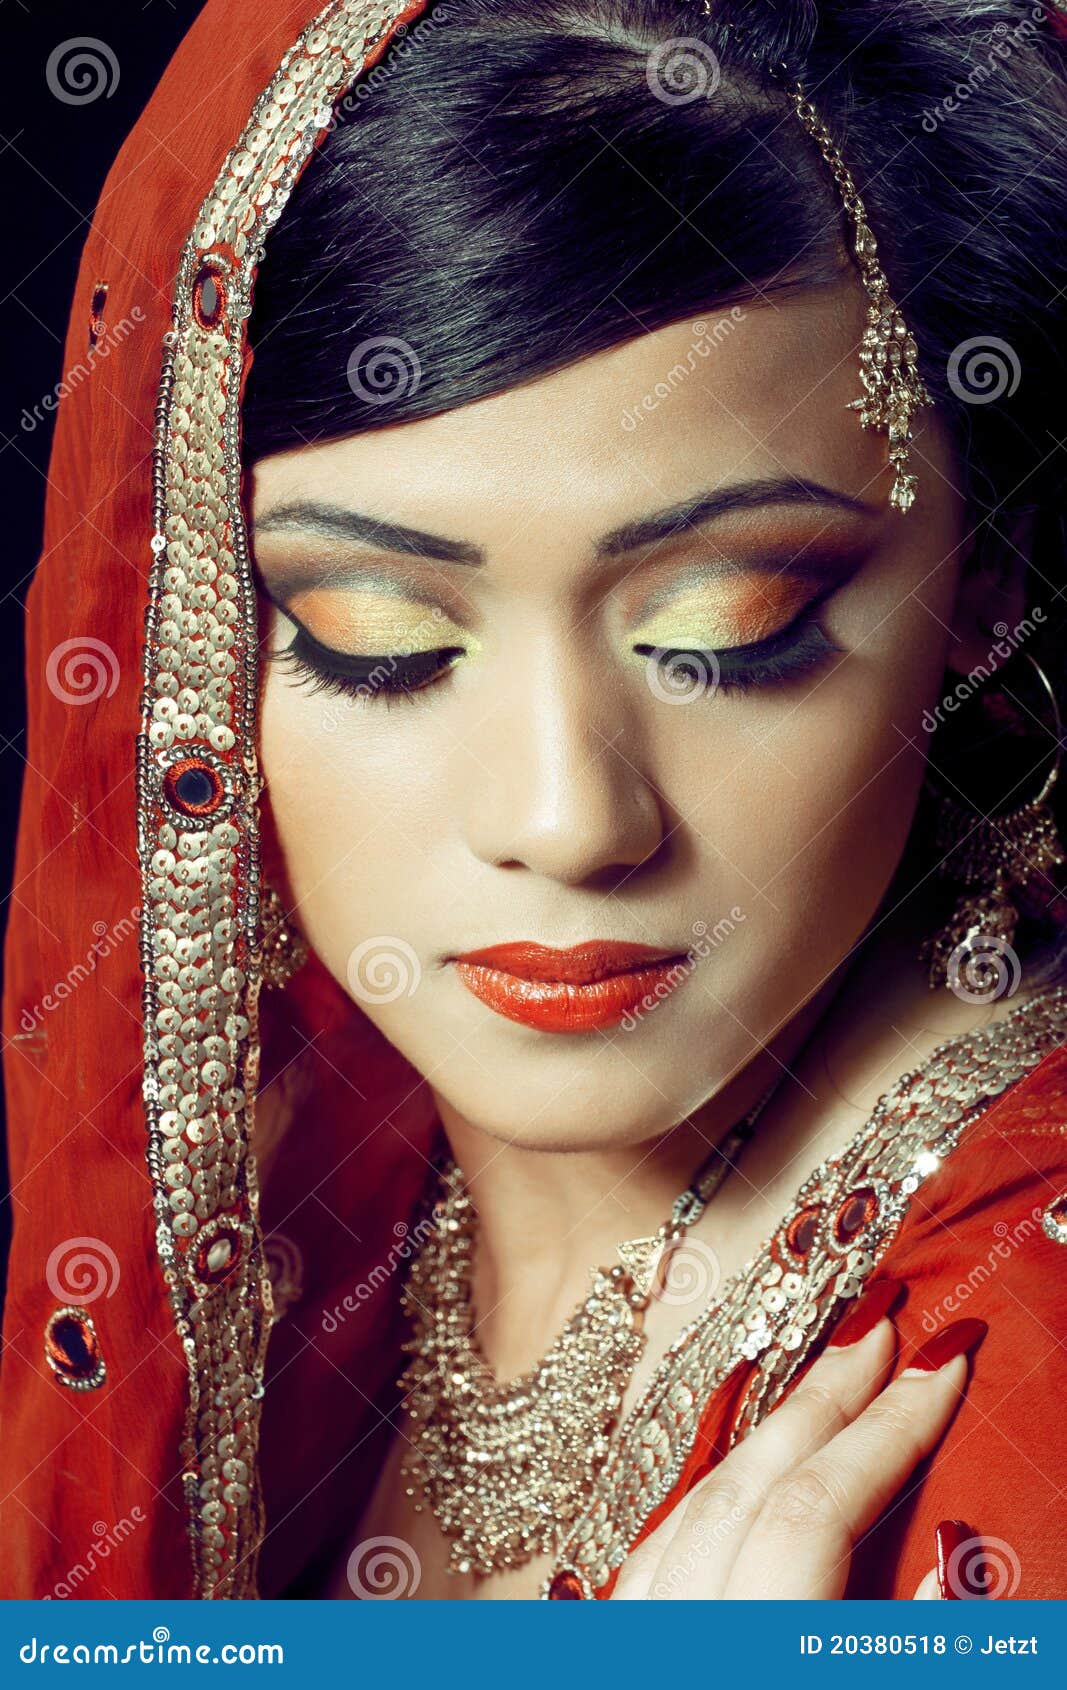 beautiful indian girl with bridal makeup stock photo - image